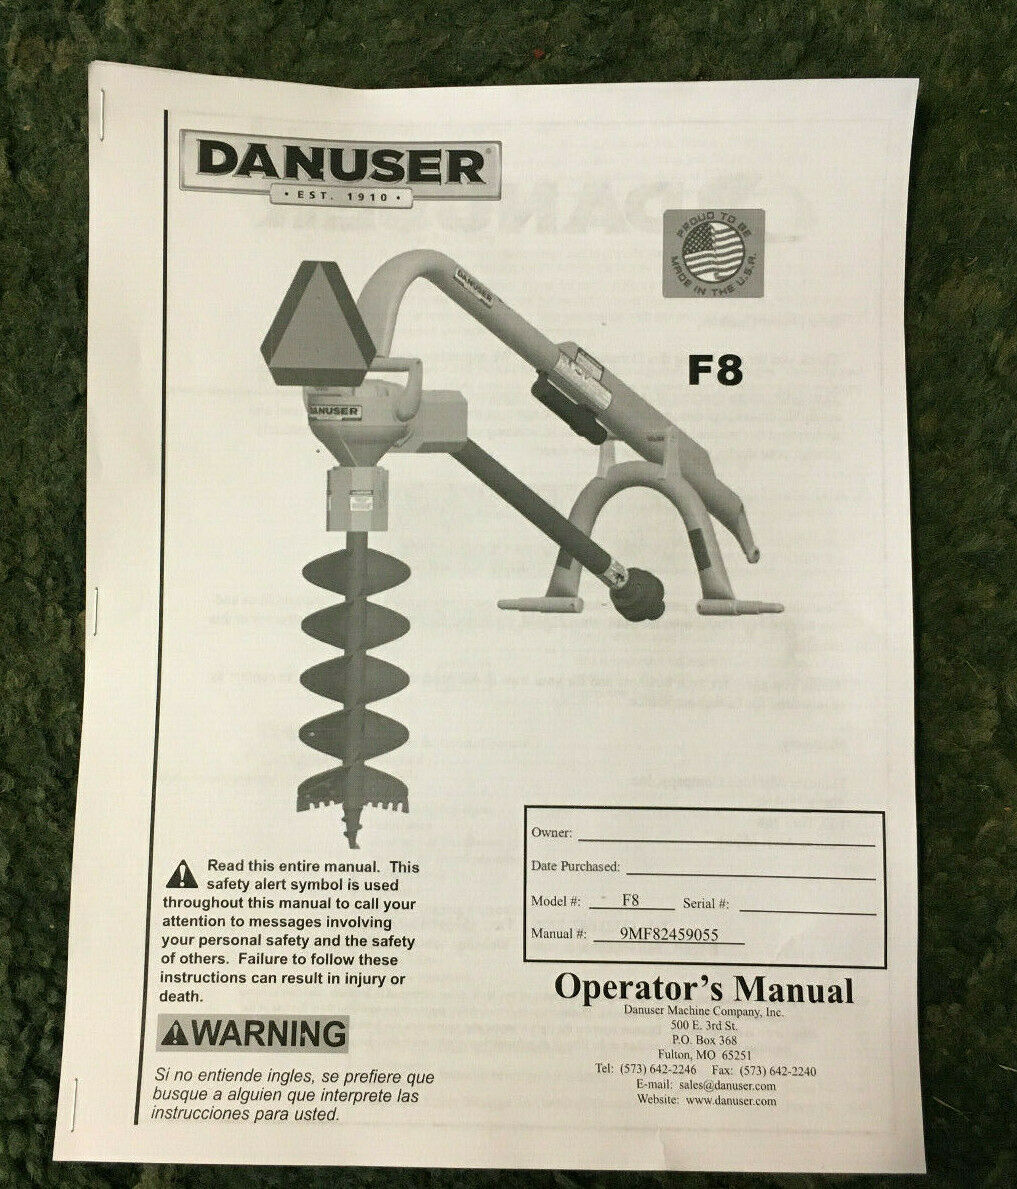 3346 - A New Reprint Operators Manual For A Danuser F8 Post Hole Digger